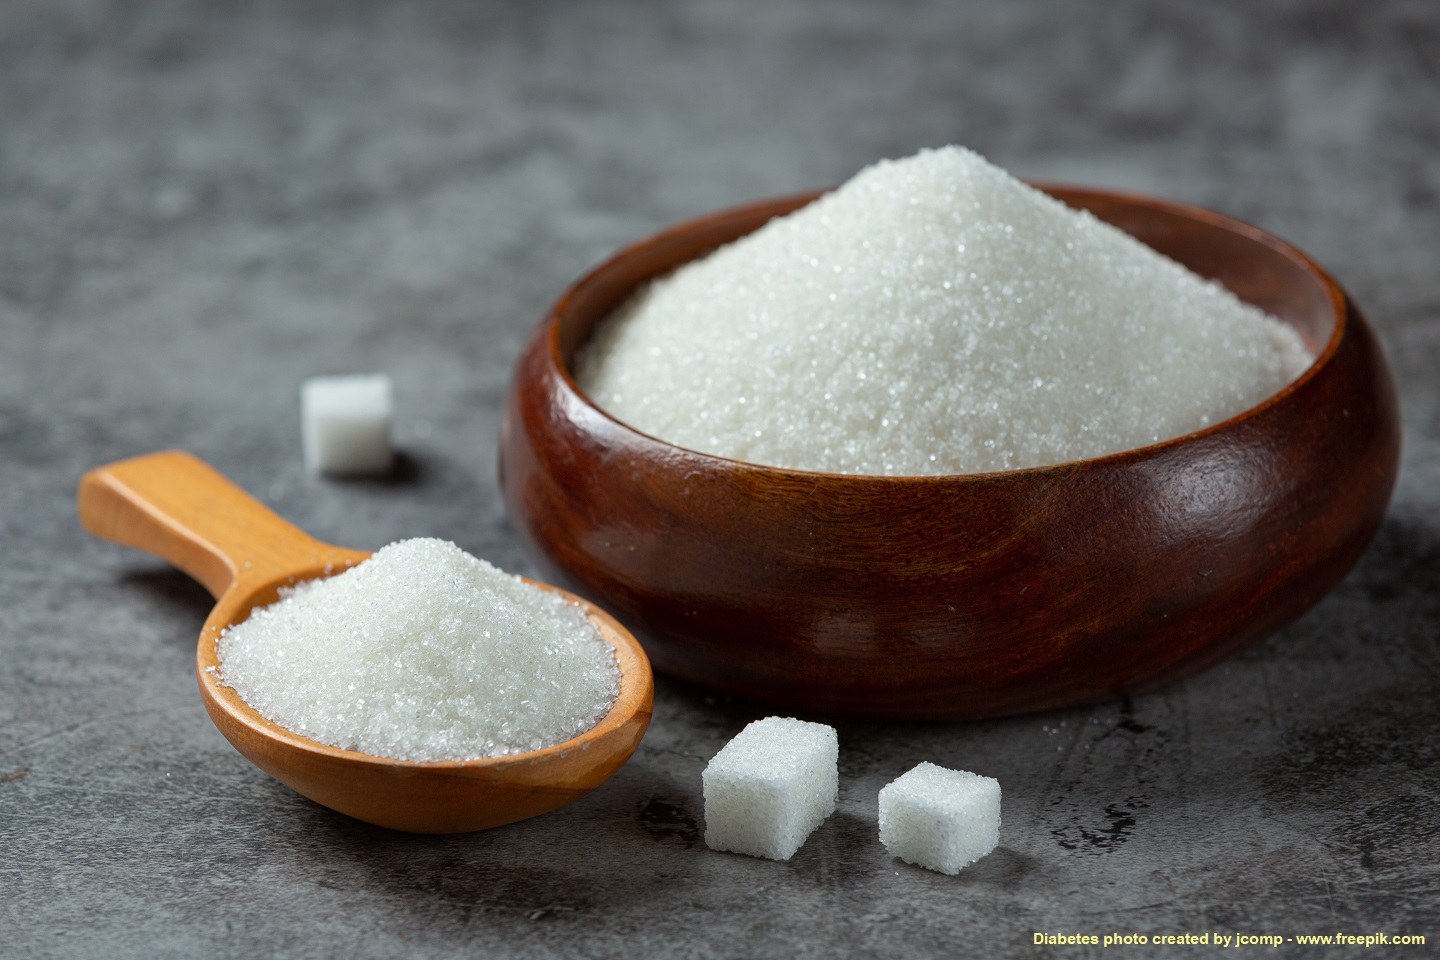 ส่งออกน้ำตาลทรายรับผลดีจากอินเดียจำกัดปริมาณส่งออก